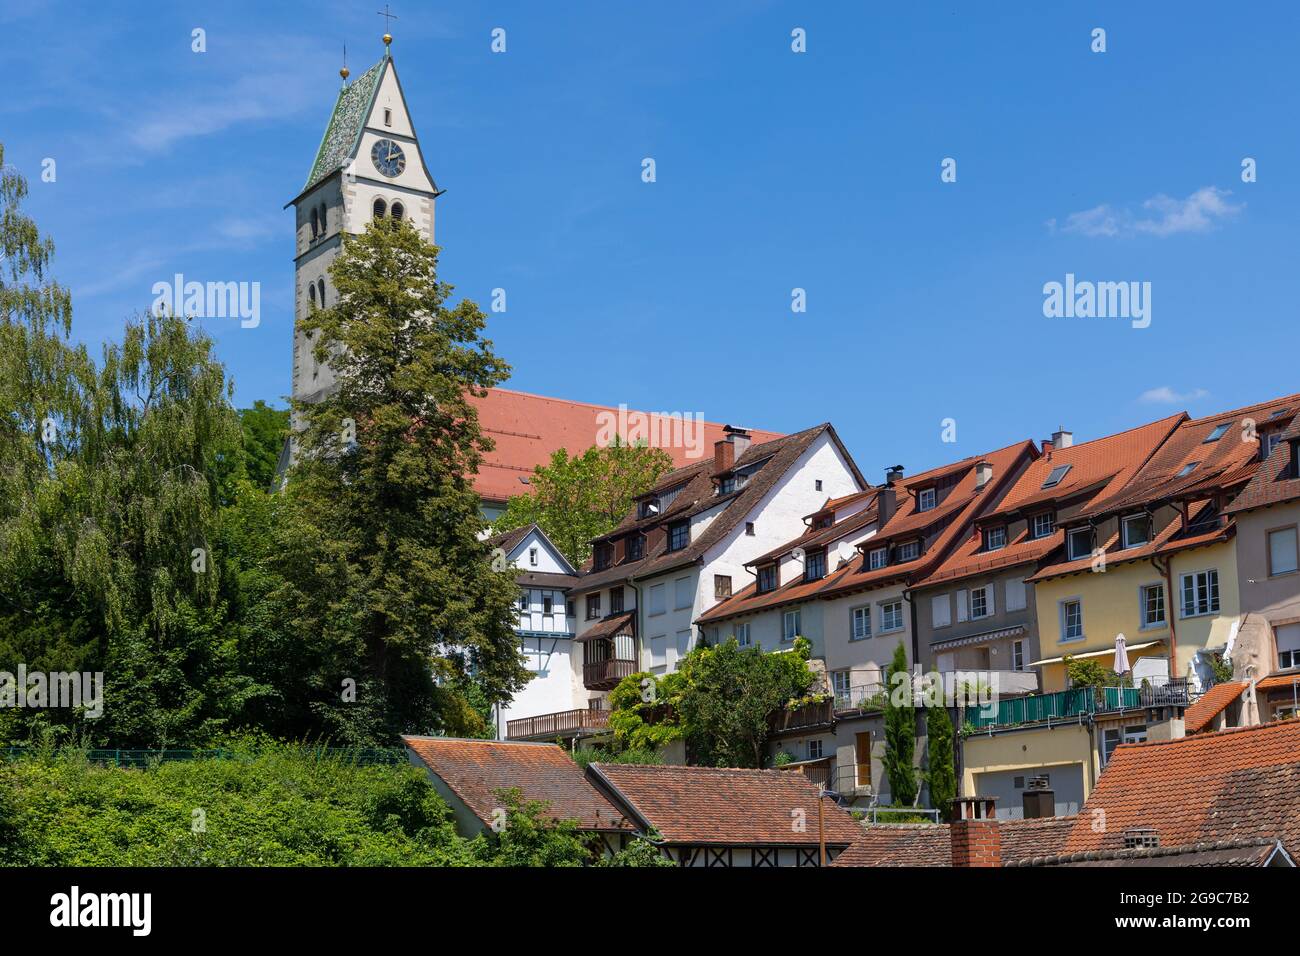 Old town of Meersburg, Germany Stock Photo